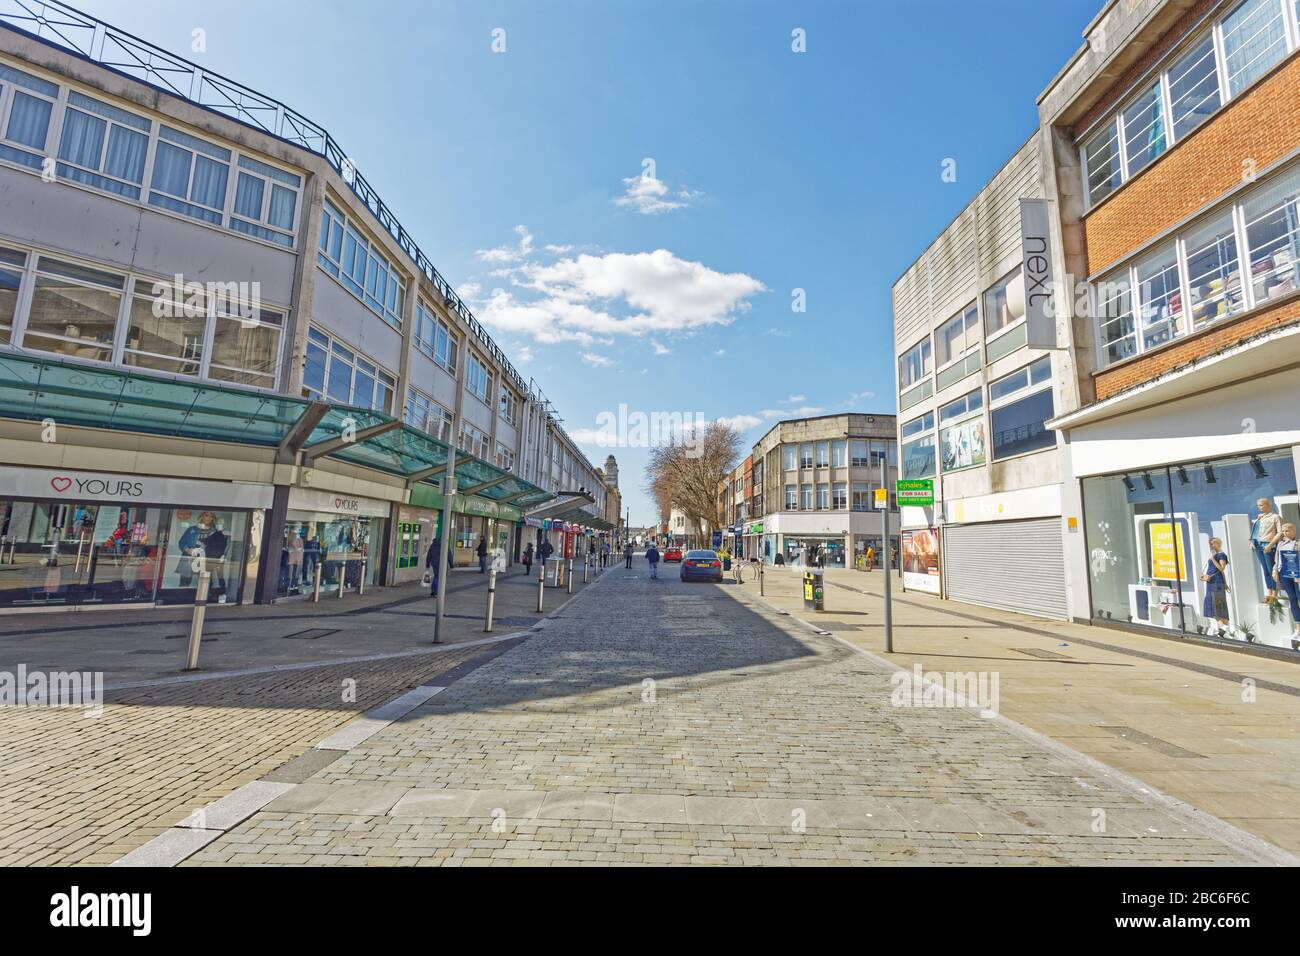 Bild: Oxford Street im Stadtzentrum bleibt verlassen, Swansea, Wales, Großbritannien. Dienstag, 31. März 2020 Re: Covid-19 Coronavirus Pandemie, Großbritannien. Stockfoto